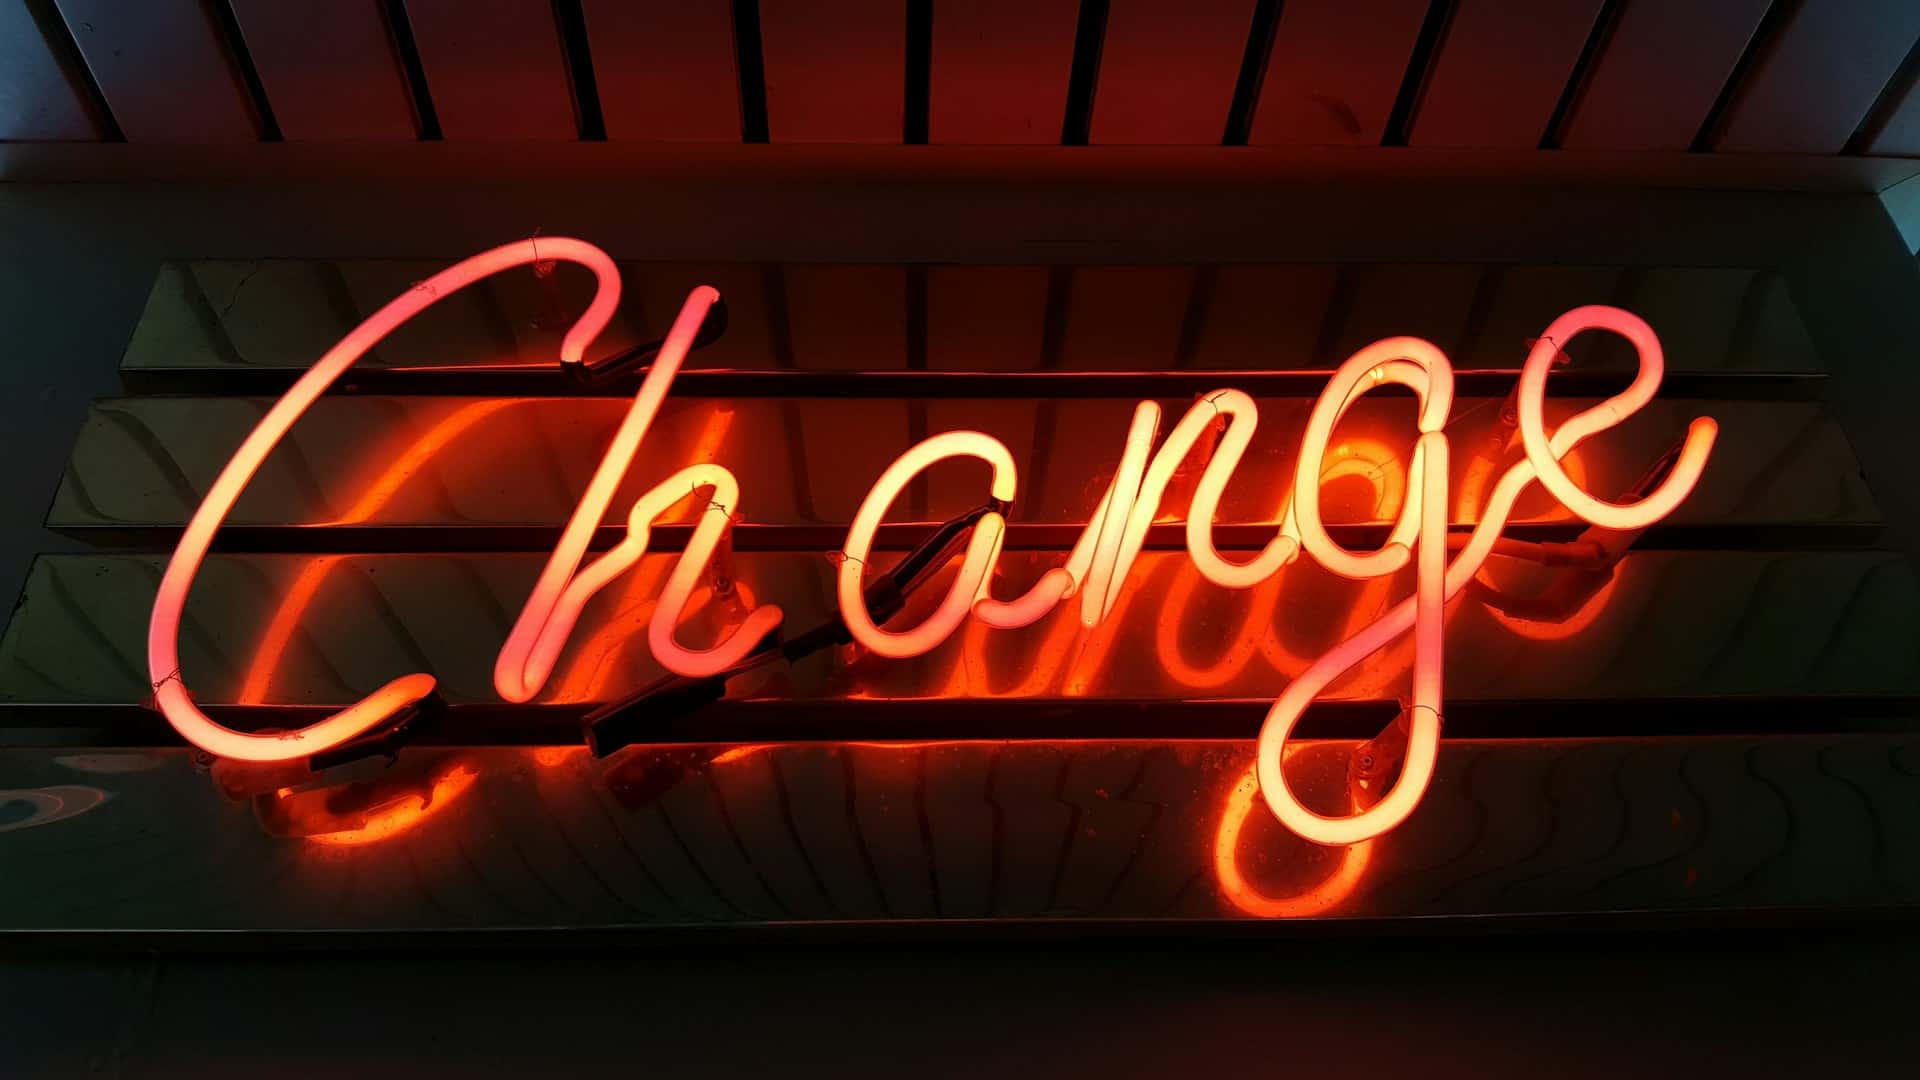 change written in orange neon